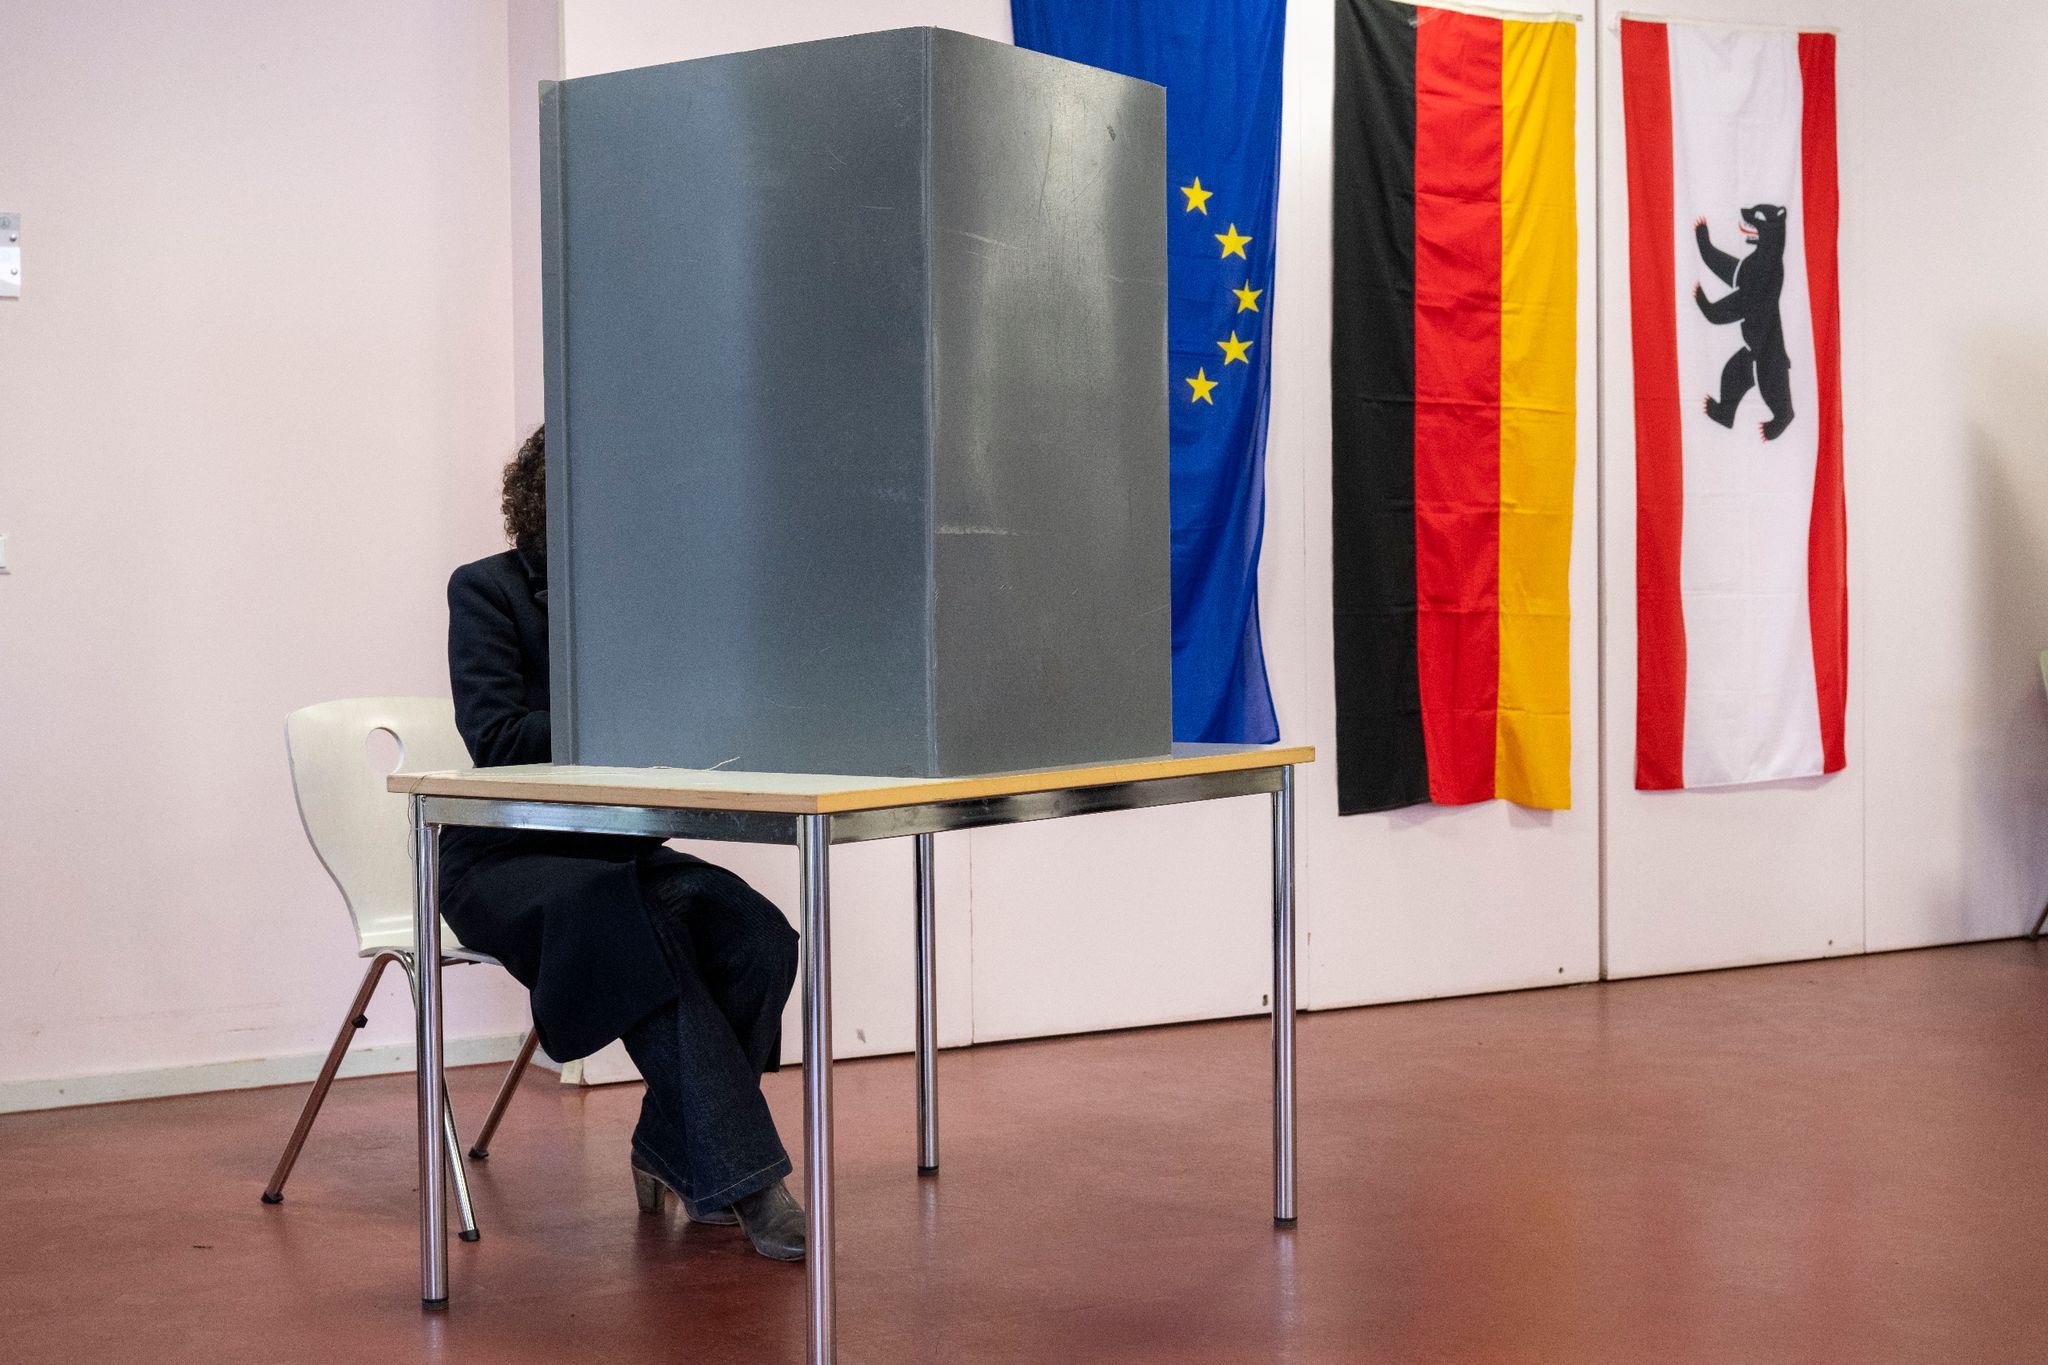 Bettina Jarasch, Spitzenkandidatin von Bündnis 90/Die Grünen, sitzt bei der Abstimmung über den Volksentscheid „Berlin 2030 Klimaneutral“ in der Wahlkabine.